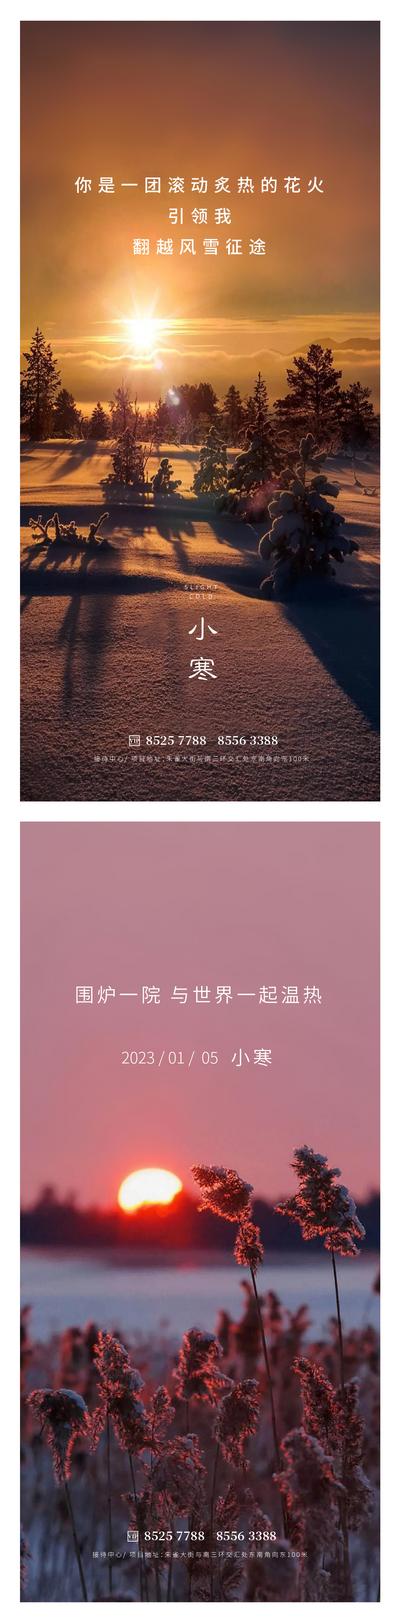 南门网 广告 海报 地产 小寒 节气 落日 日出 阳光 暖色 雪 树木